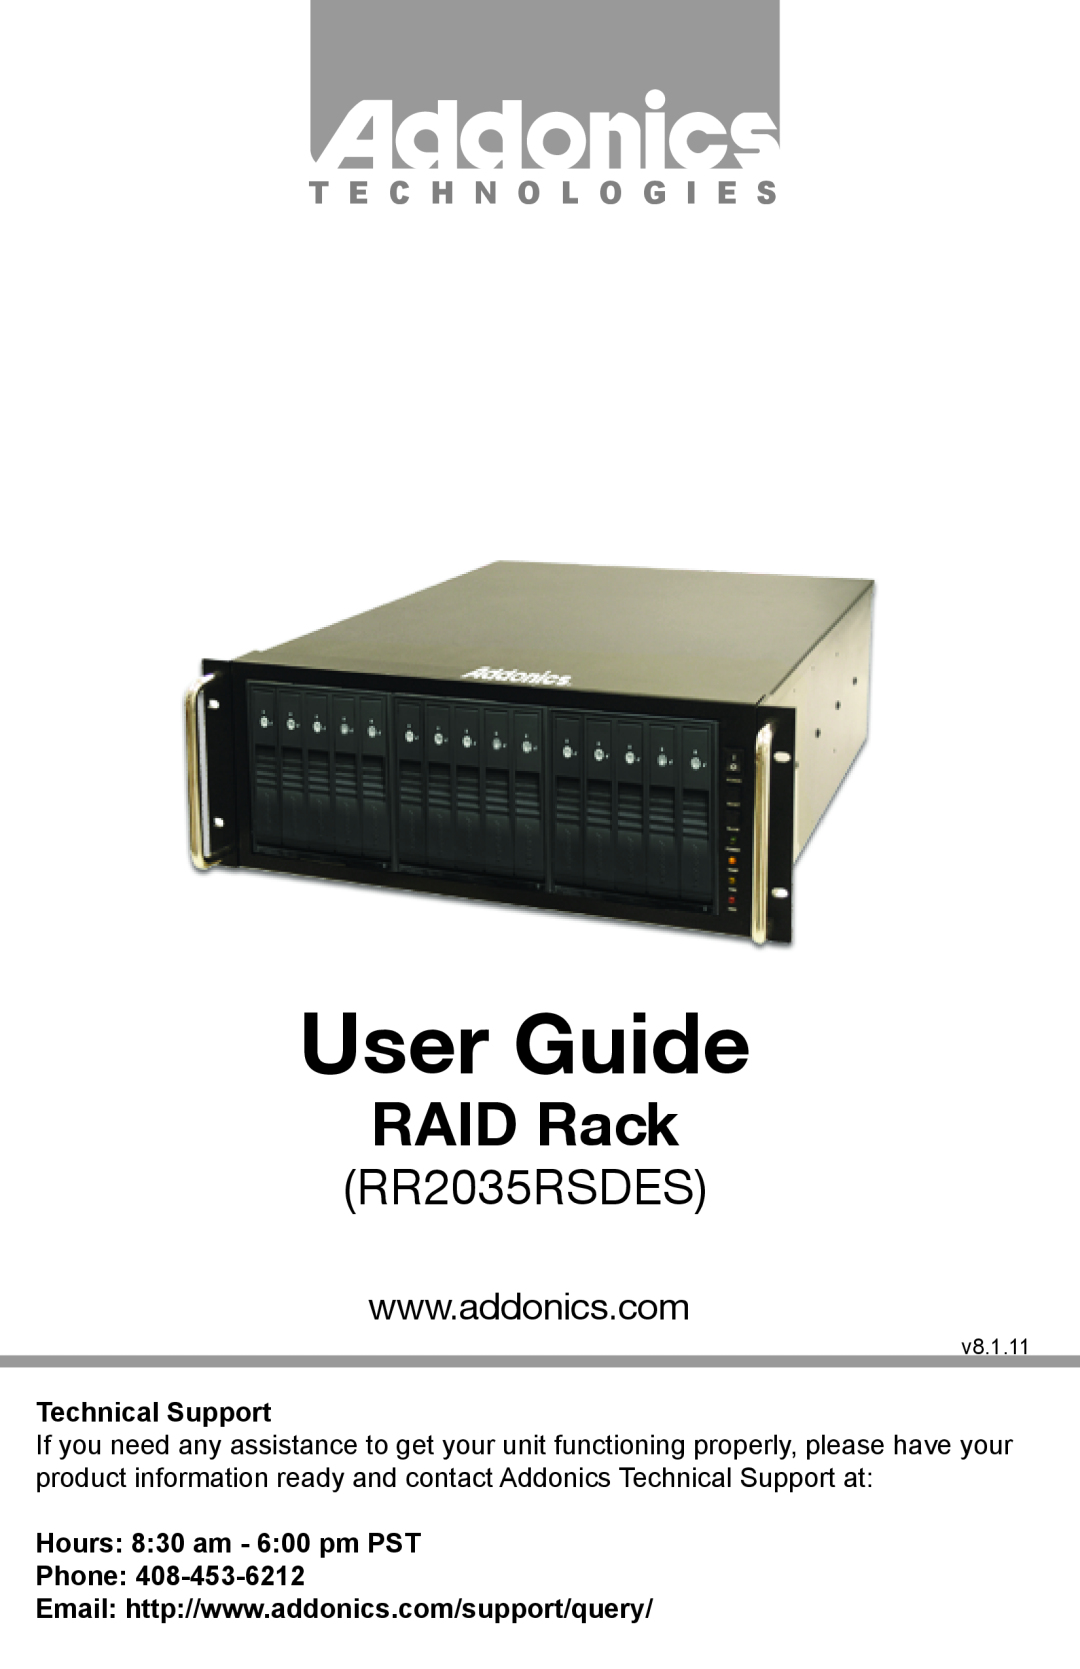 Addonics Technologies RR2035RSDES manual User Guide, RAID Rack, T E C H N O L O G I E S, Technical Support, v8.1.11 